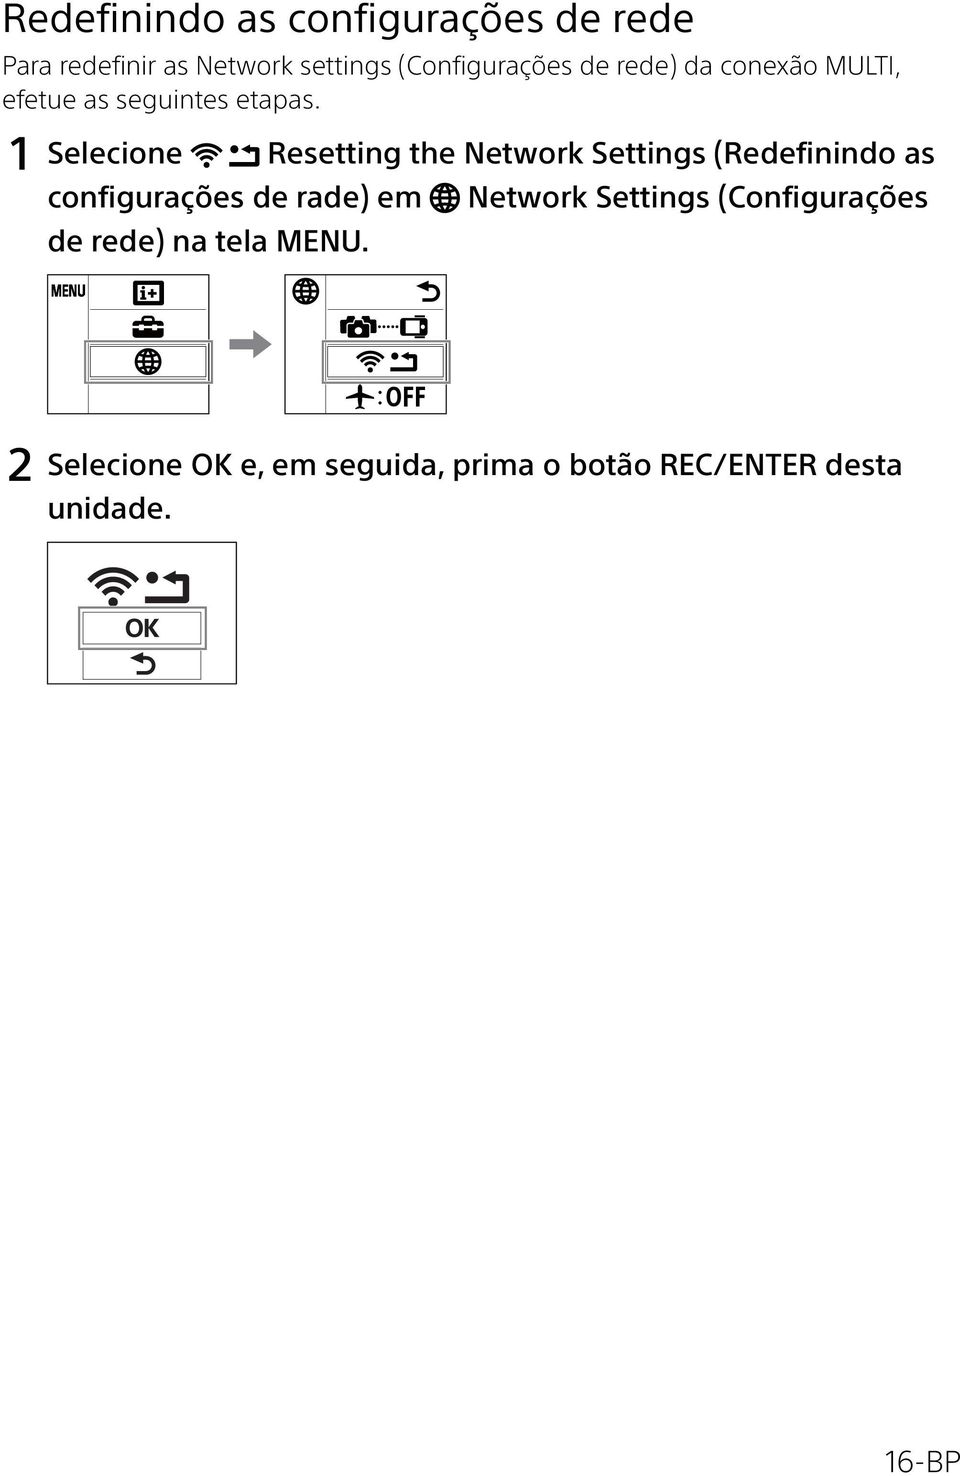 1 Selecione Resetting the Network Settings (Redefinindo as configurações de rade) em